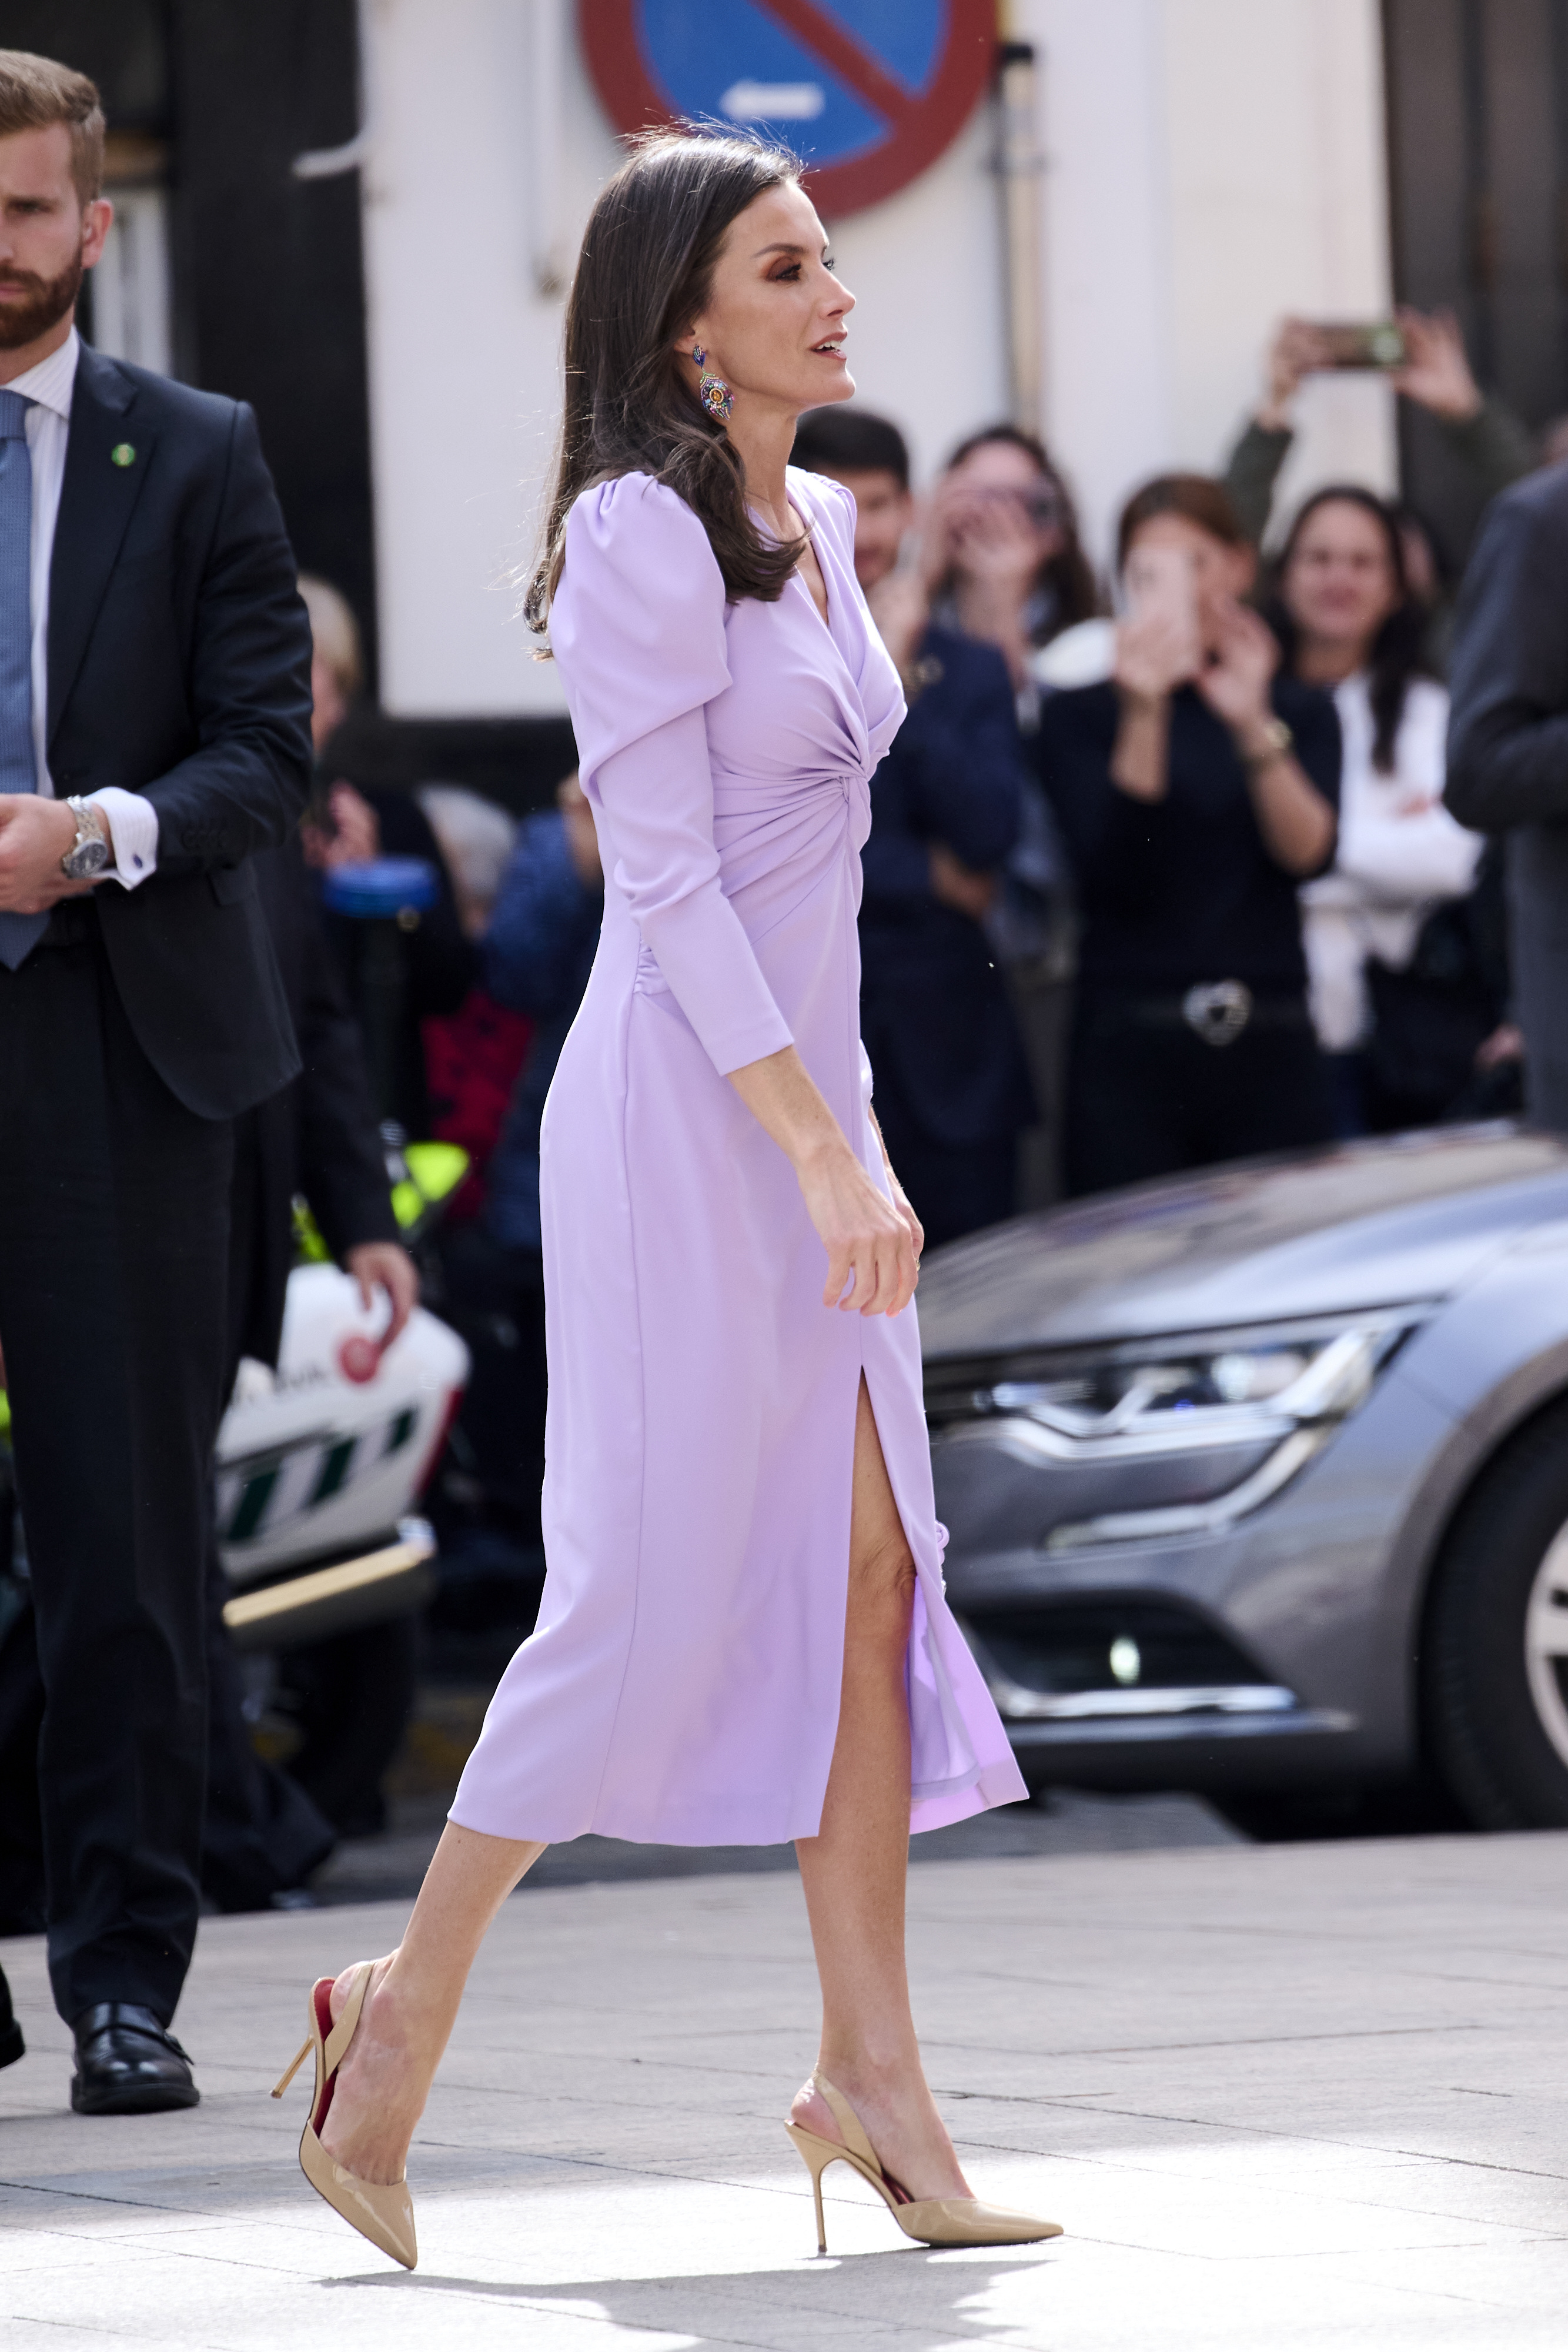 ALT: La Reina Letizia estrena vestido 'made in Spain' en un color insólito en su armario en los últimos tiempos